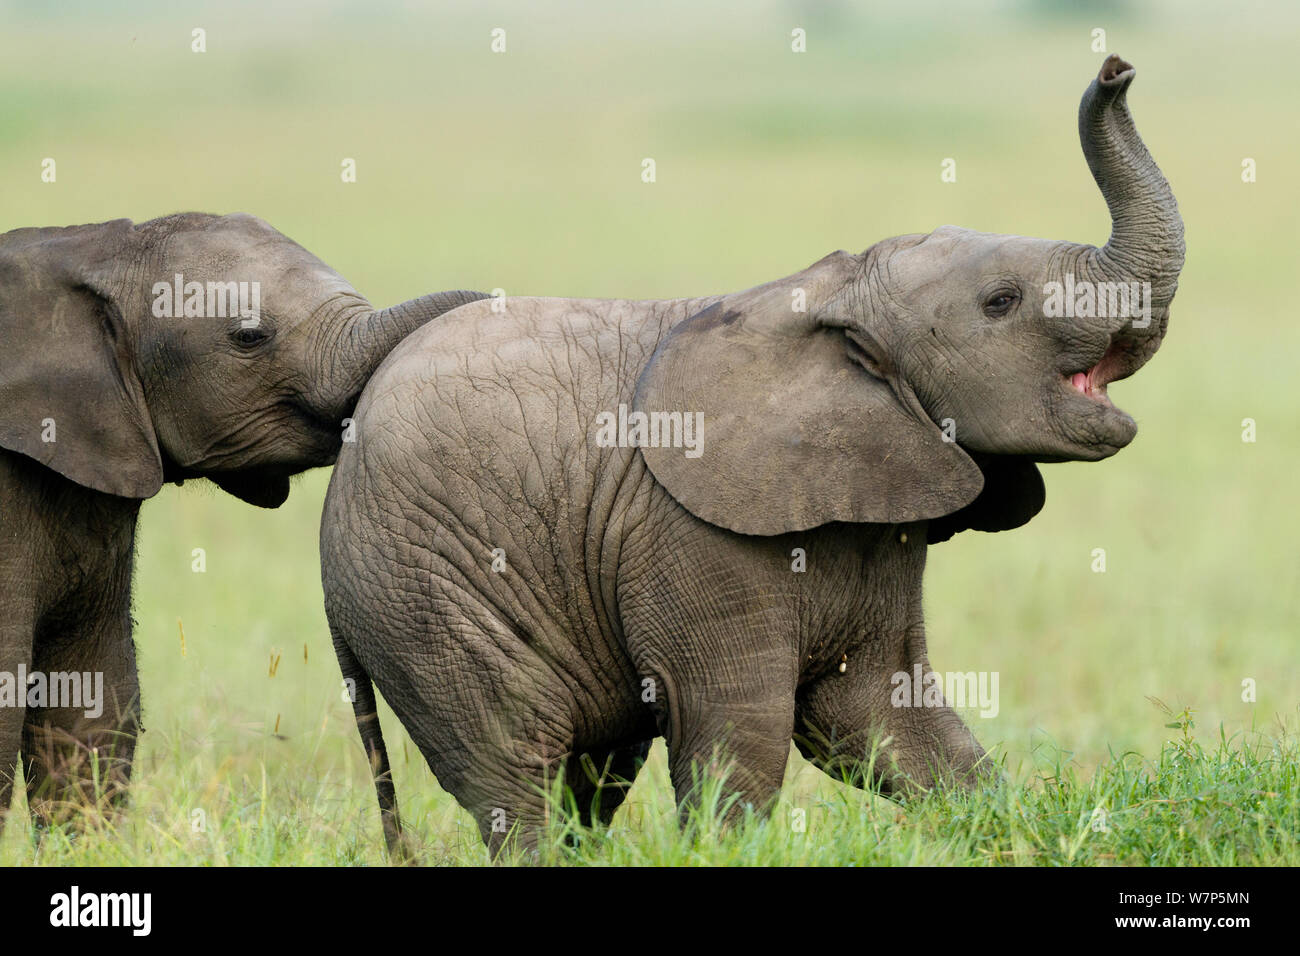 L'éléphant africain (Loxodonta africana) veaux de jouer. Masai-Mara Game Reserve, Kenya. Banque D'Images